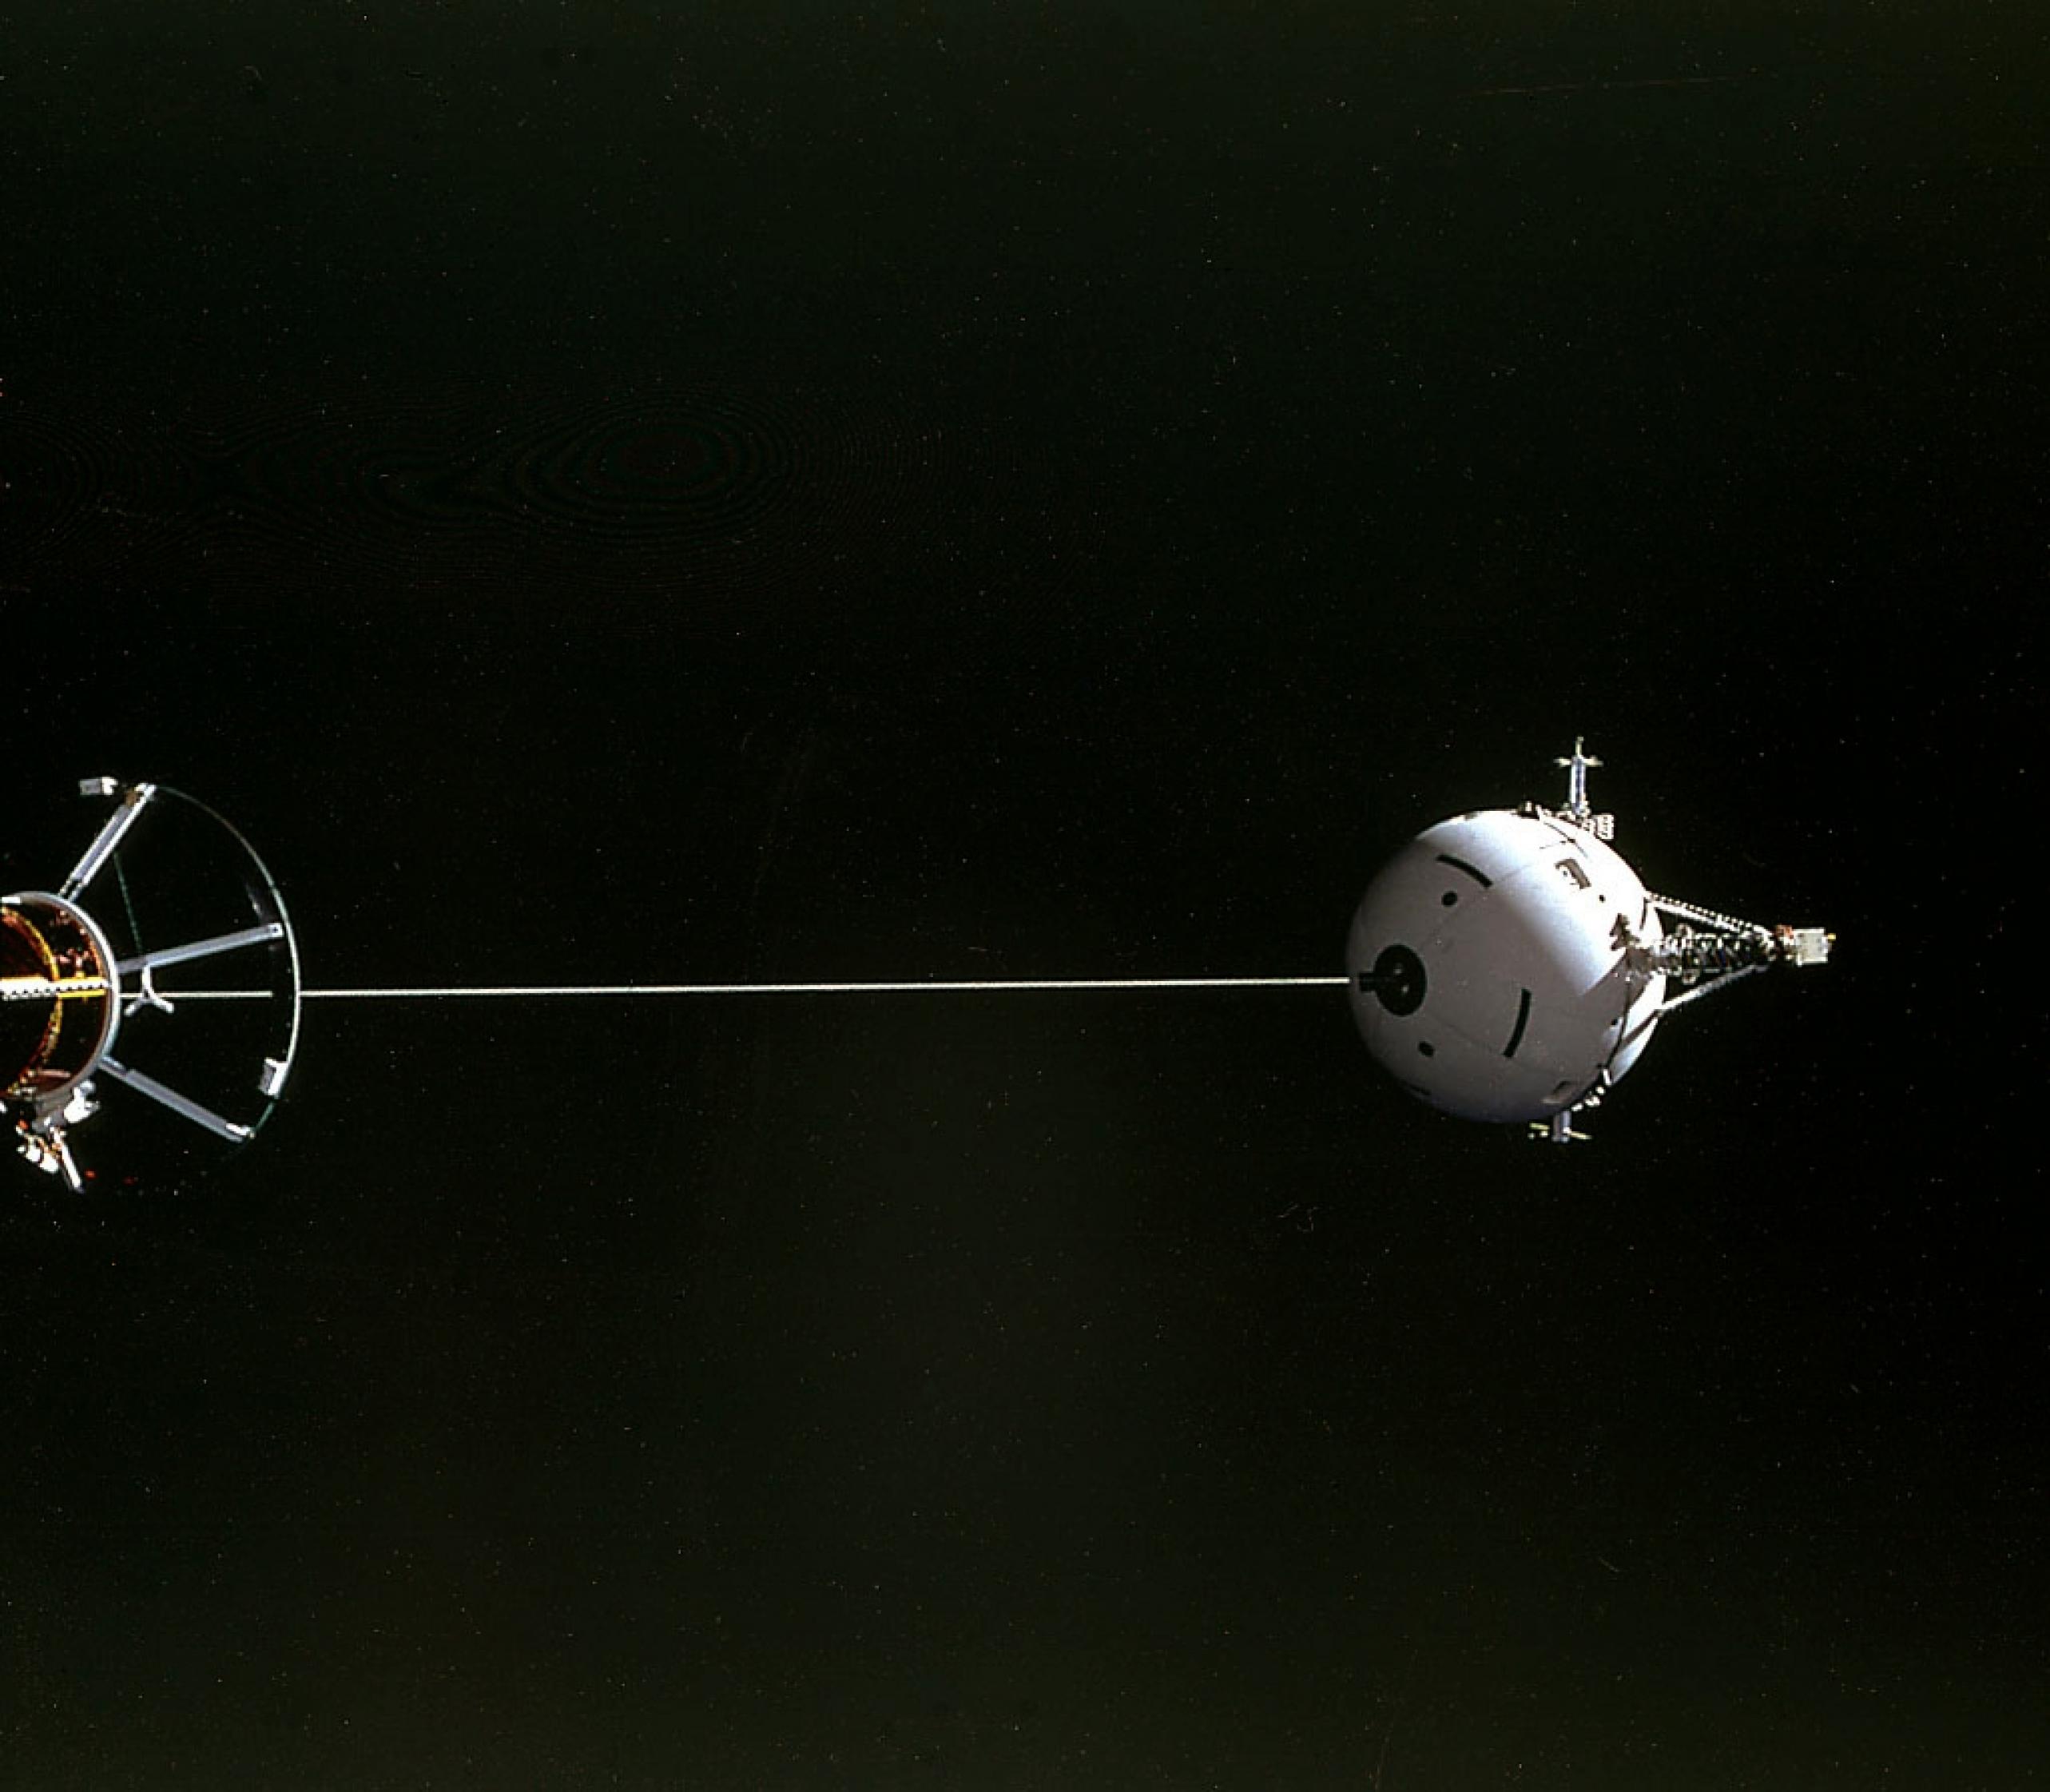 Das Tethered Satellite System wird bei der Mission STS-46 des Space Shuttles erstmals getestet.